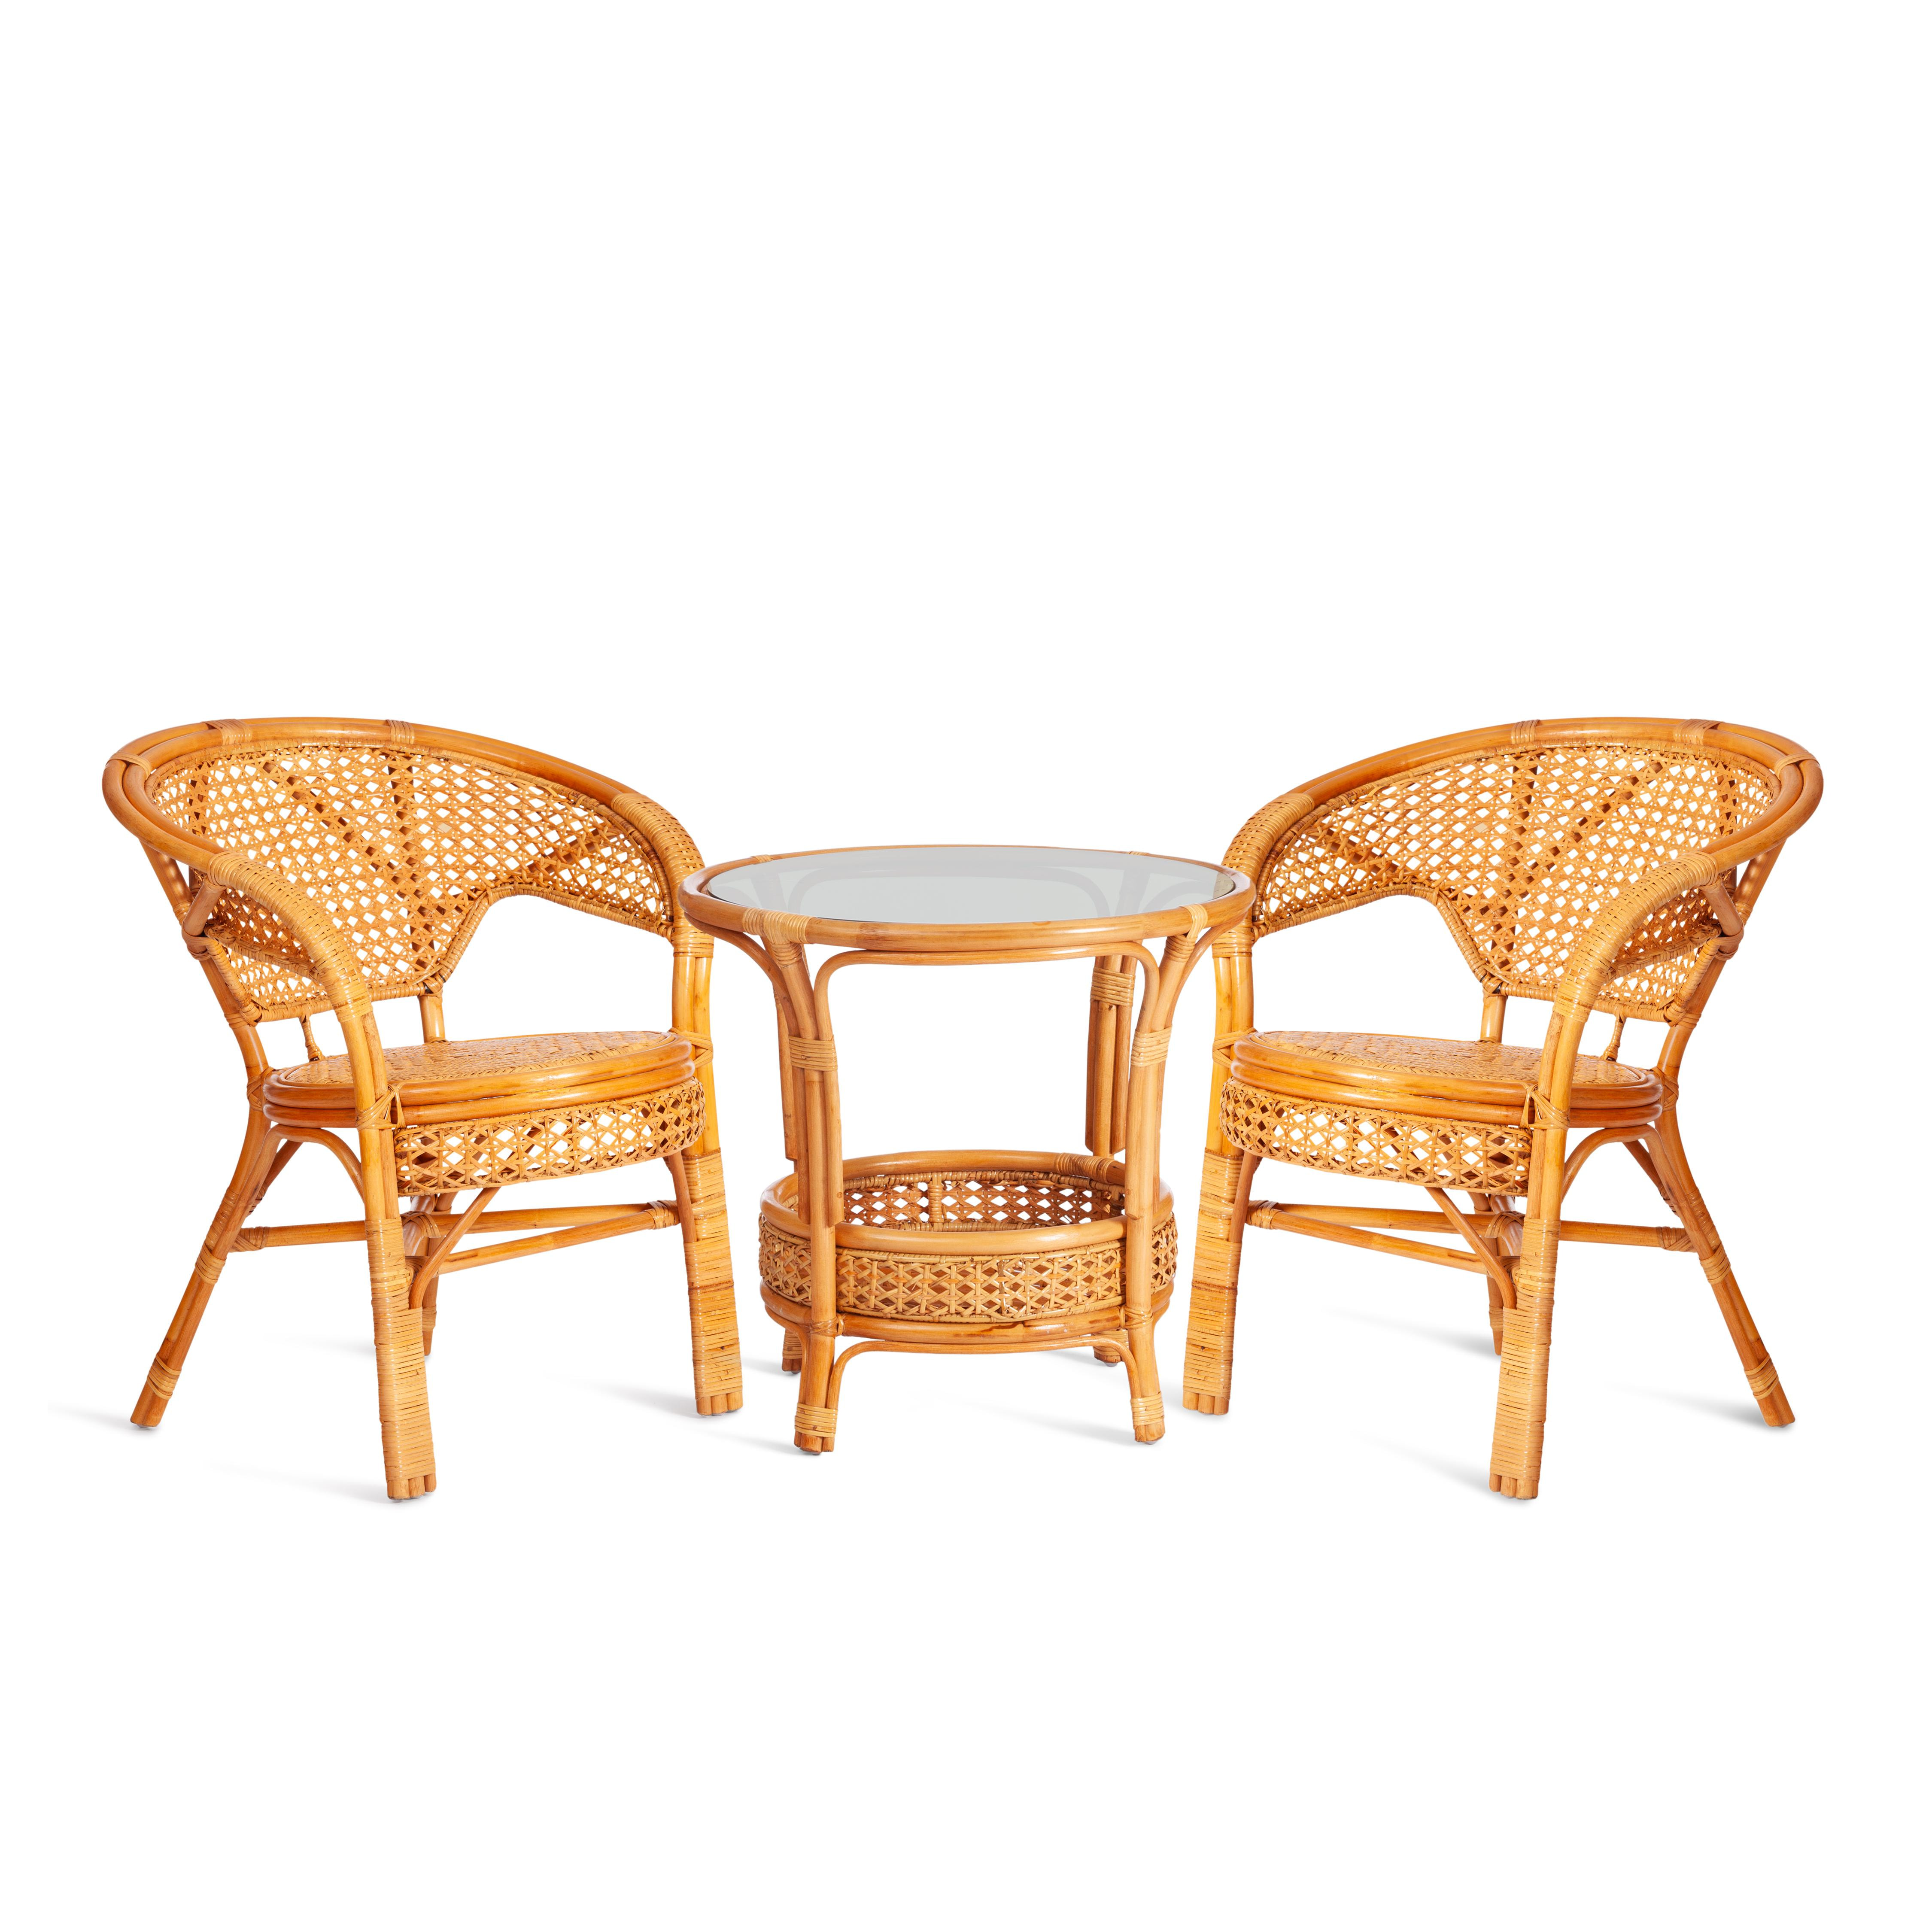 ТЕРРАСНЫЙ КОМПЛЕКТ "PELANGI" (стол со стеклом + 2 кресла) /без подушек/ ротанг, кресло 65х65х77см, стол диаметр 64х61см, Honey (мед)